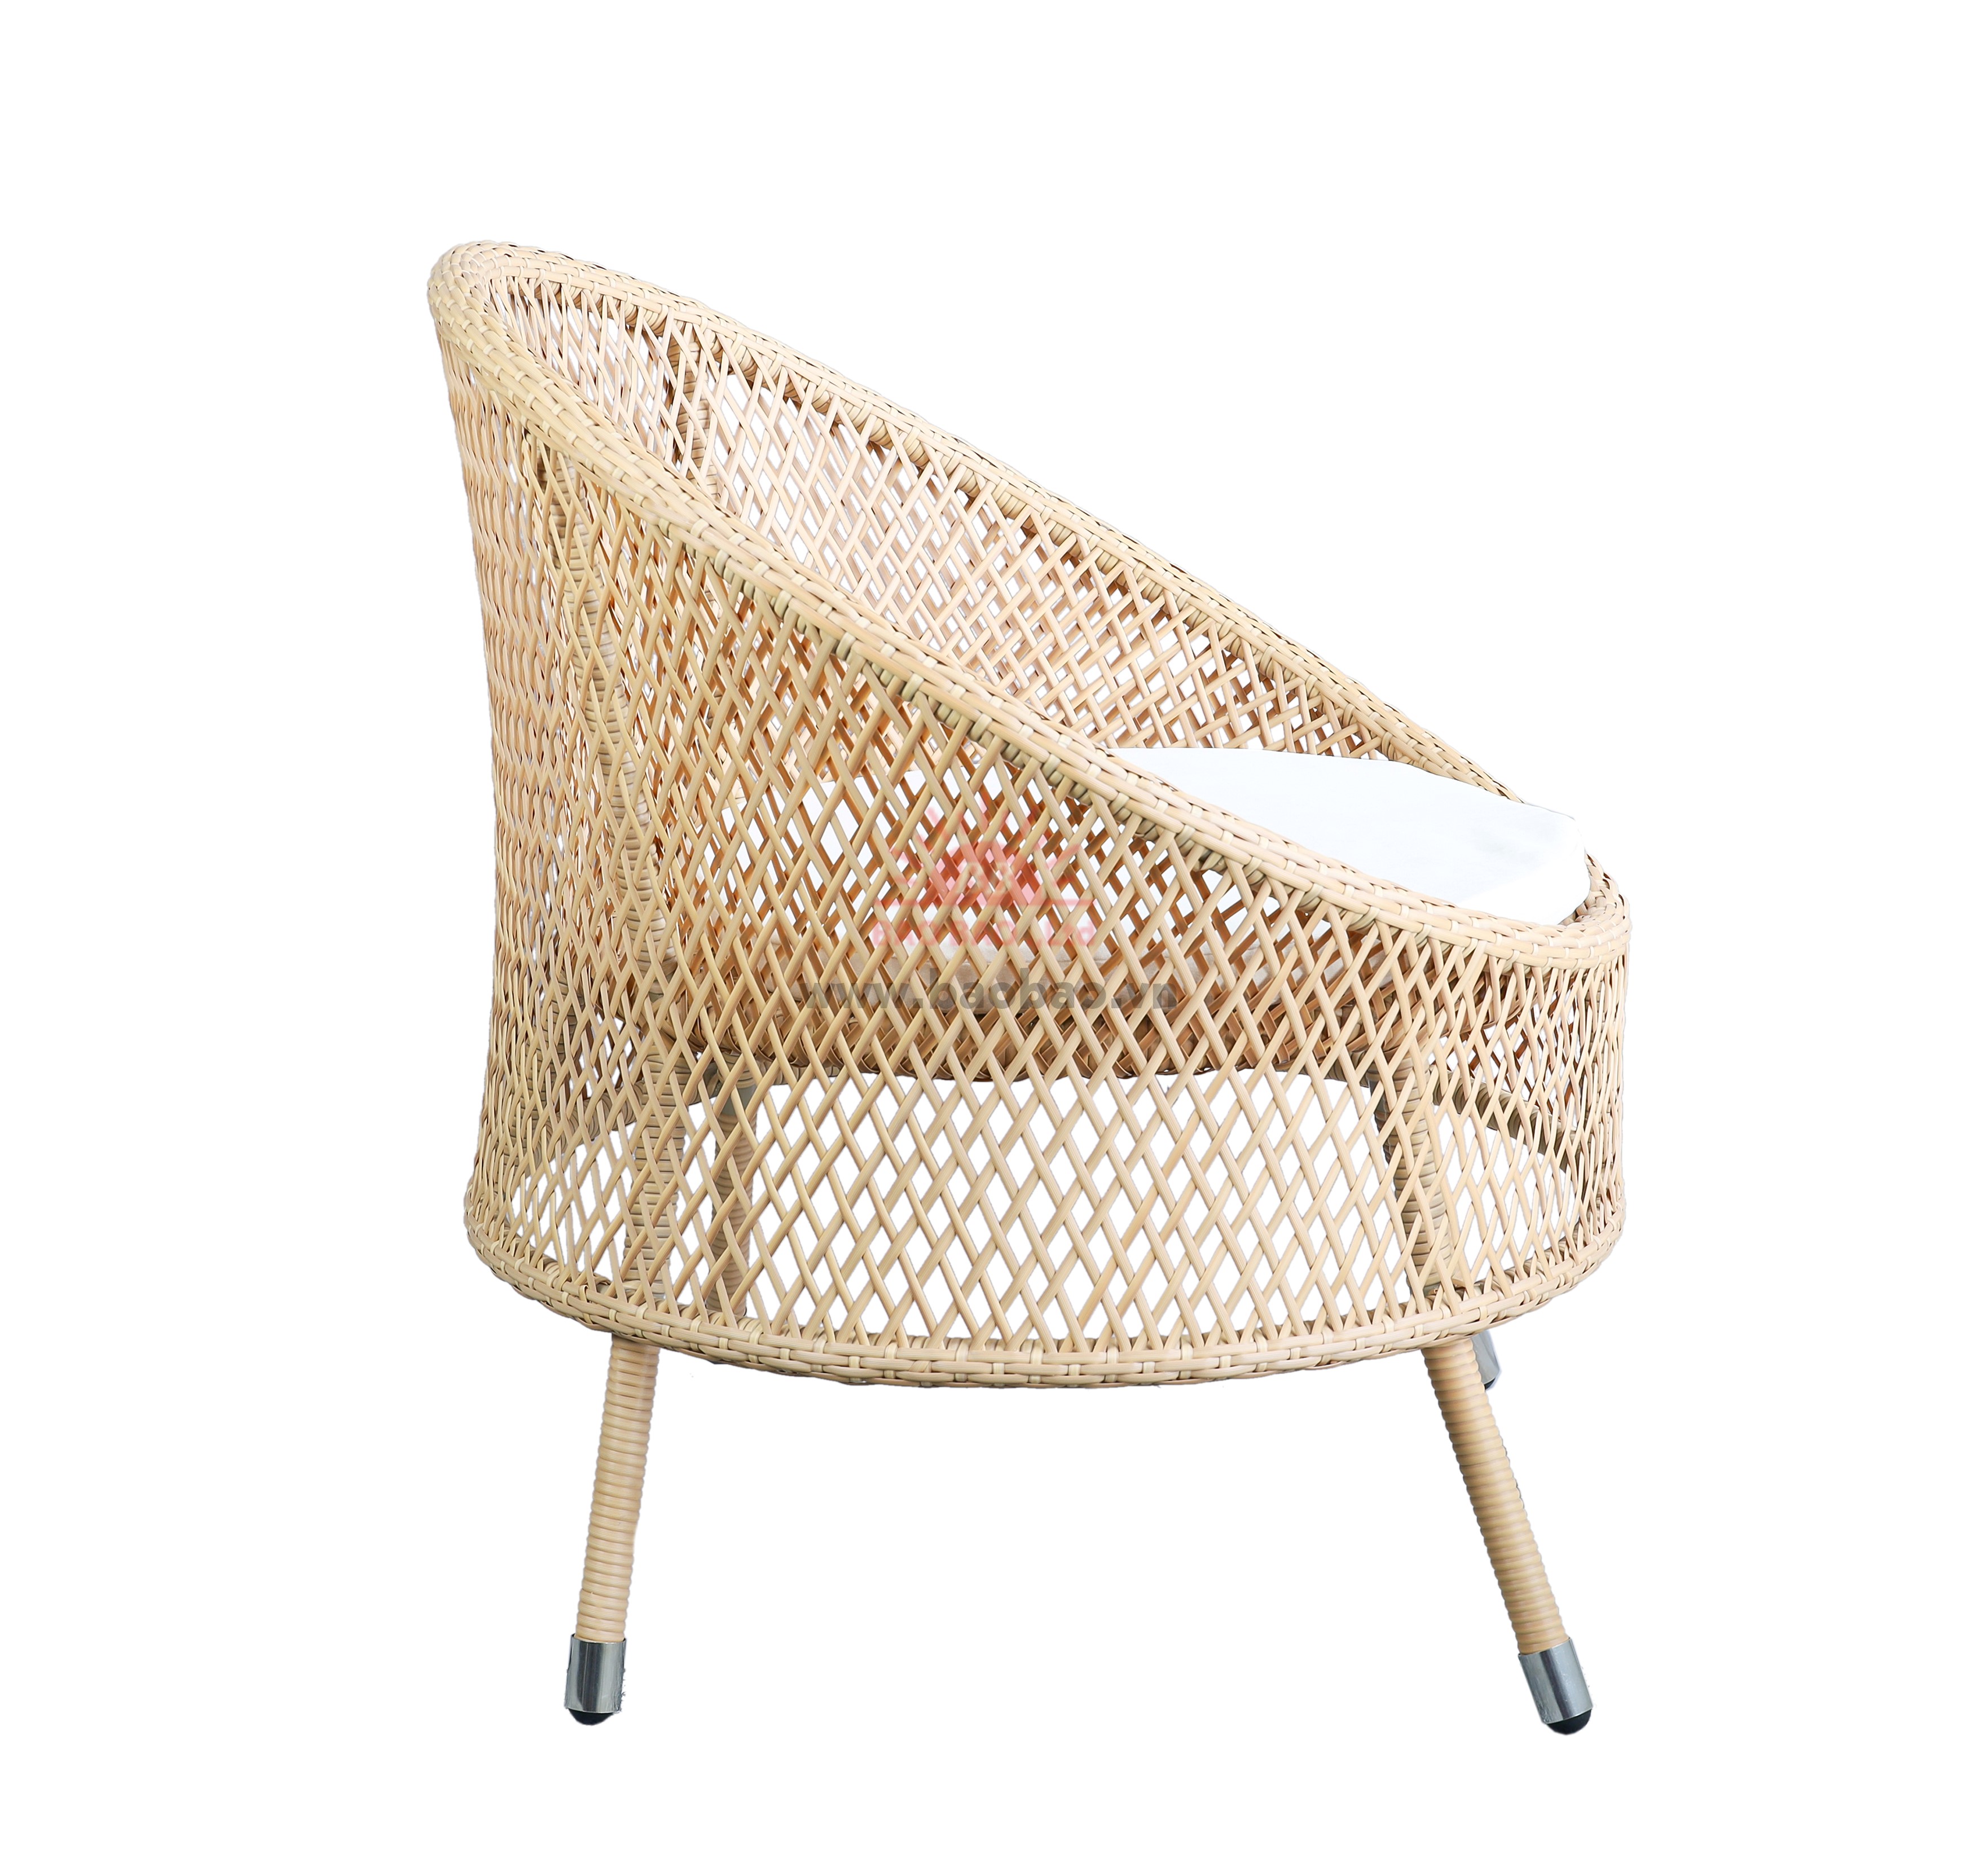 Wicker Outdoor Chair 01